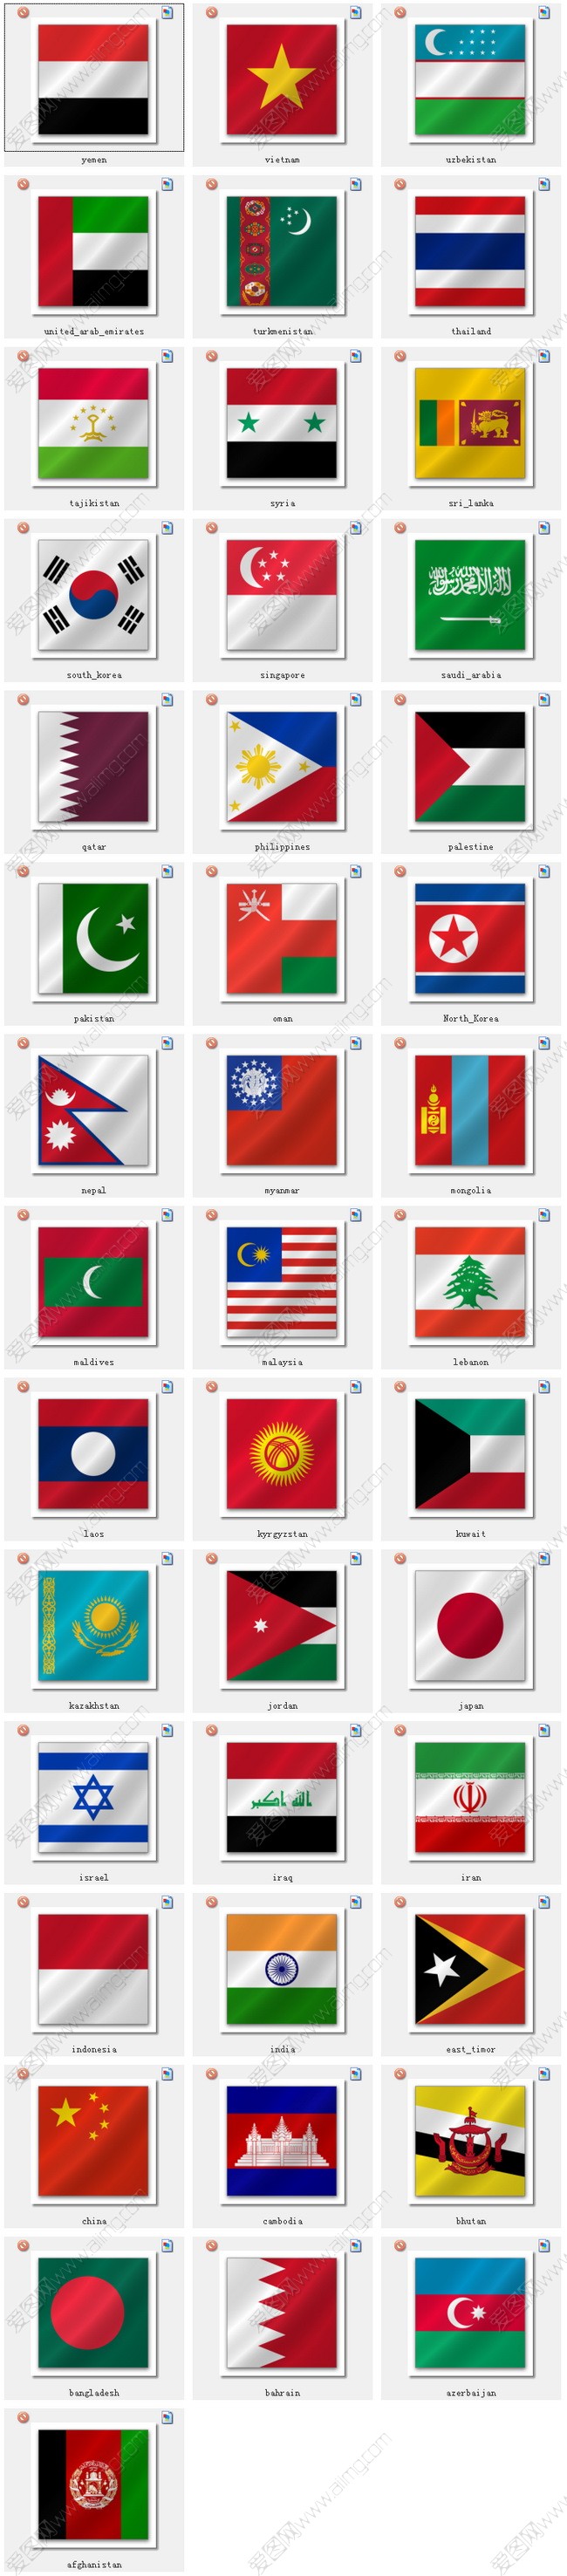 【2017年整理】世界各国国旗国名